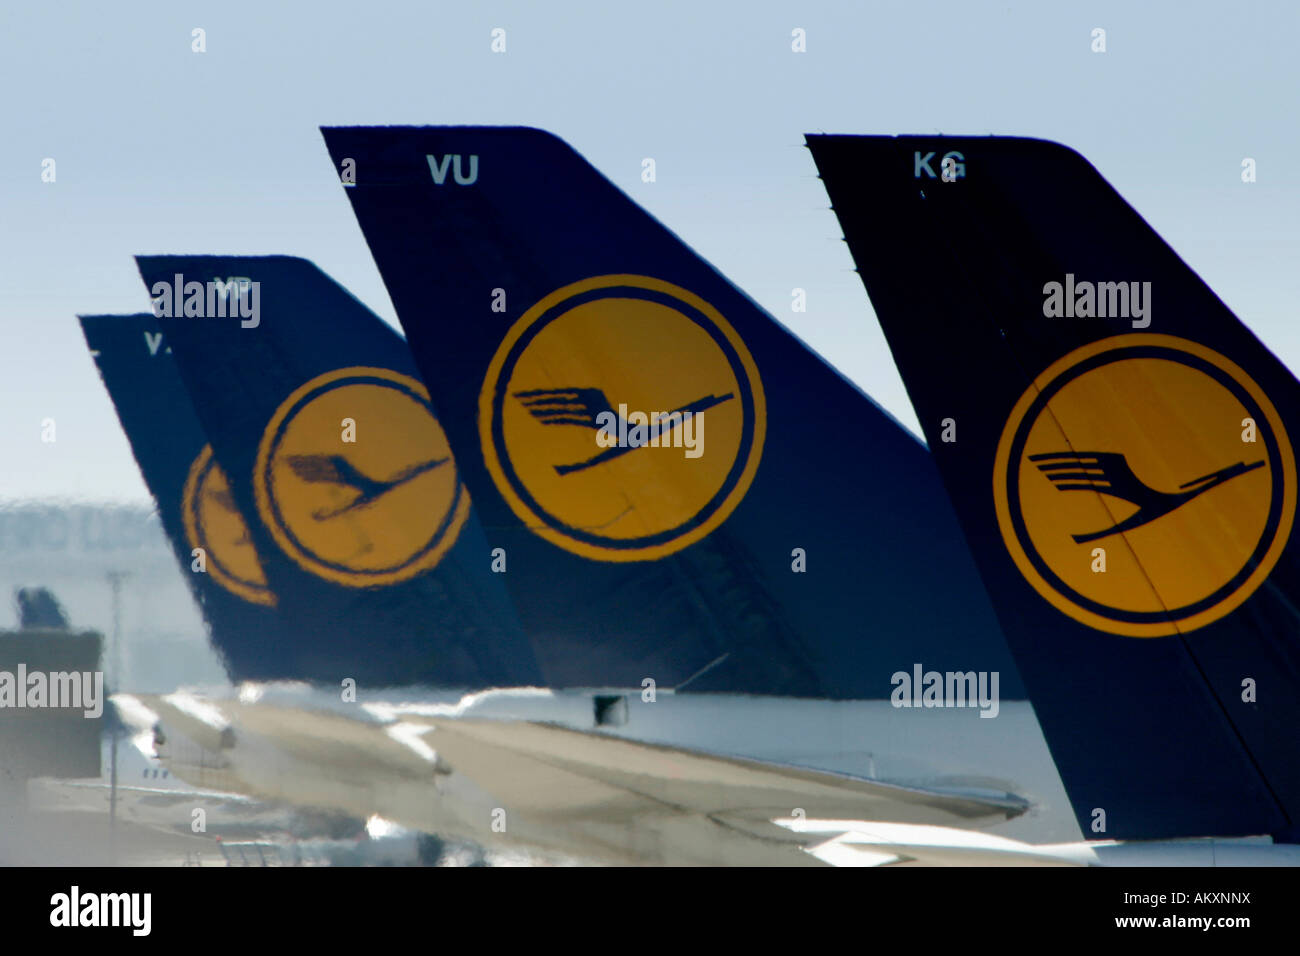 Flugzeug-Flotte der Lufthansa auf dem Flughafen, Leitwerk, Frankfurt am Main, Deutschland. Stockfoto